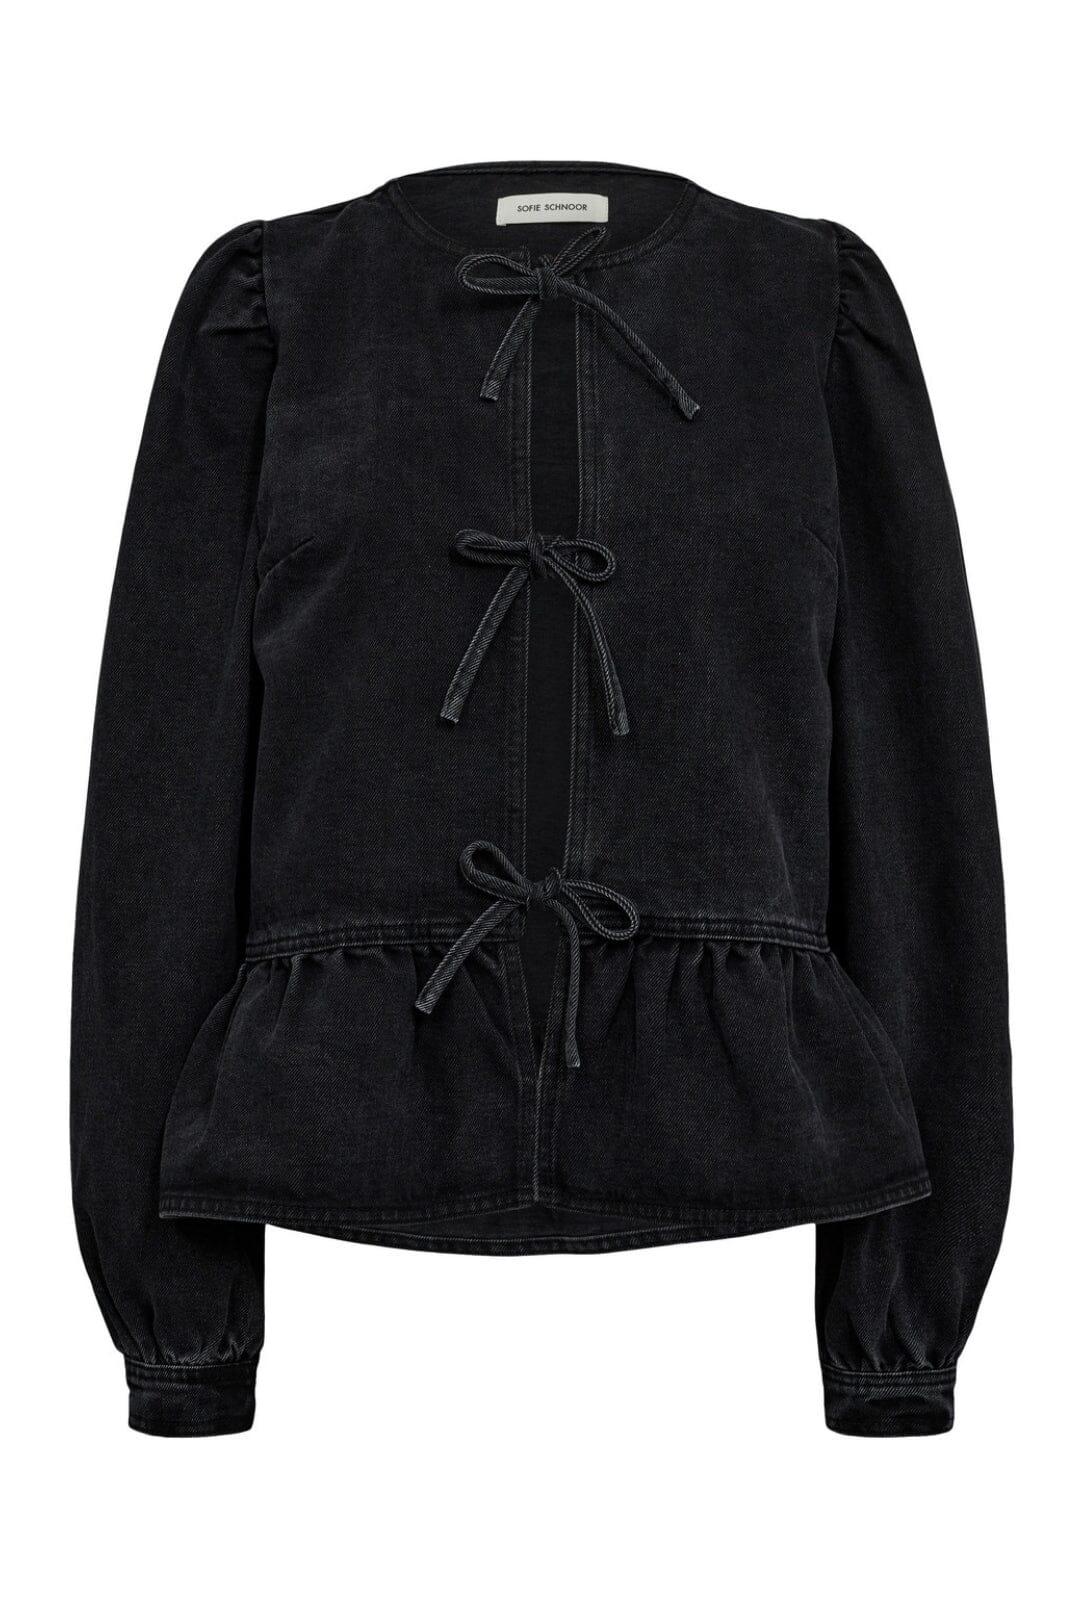 Sofie Schnoor - S234250 Shirt - Washed Black Skjorter 